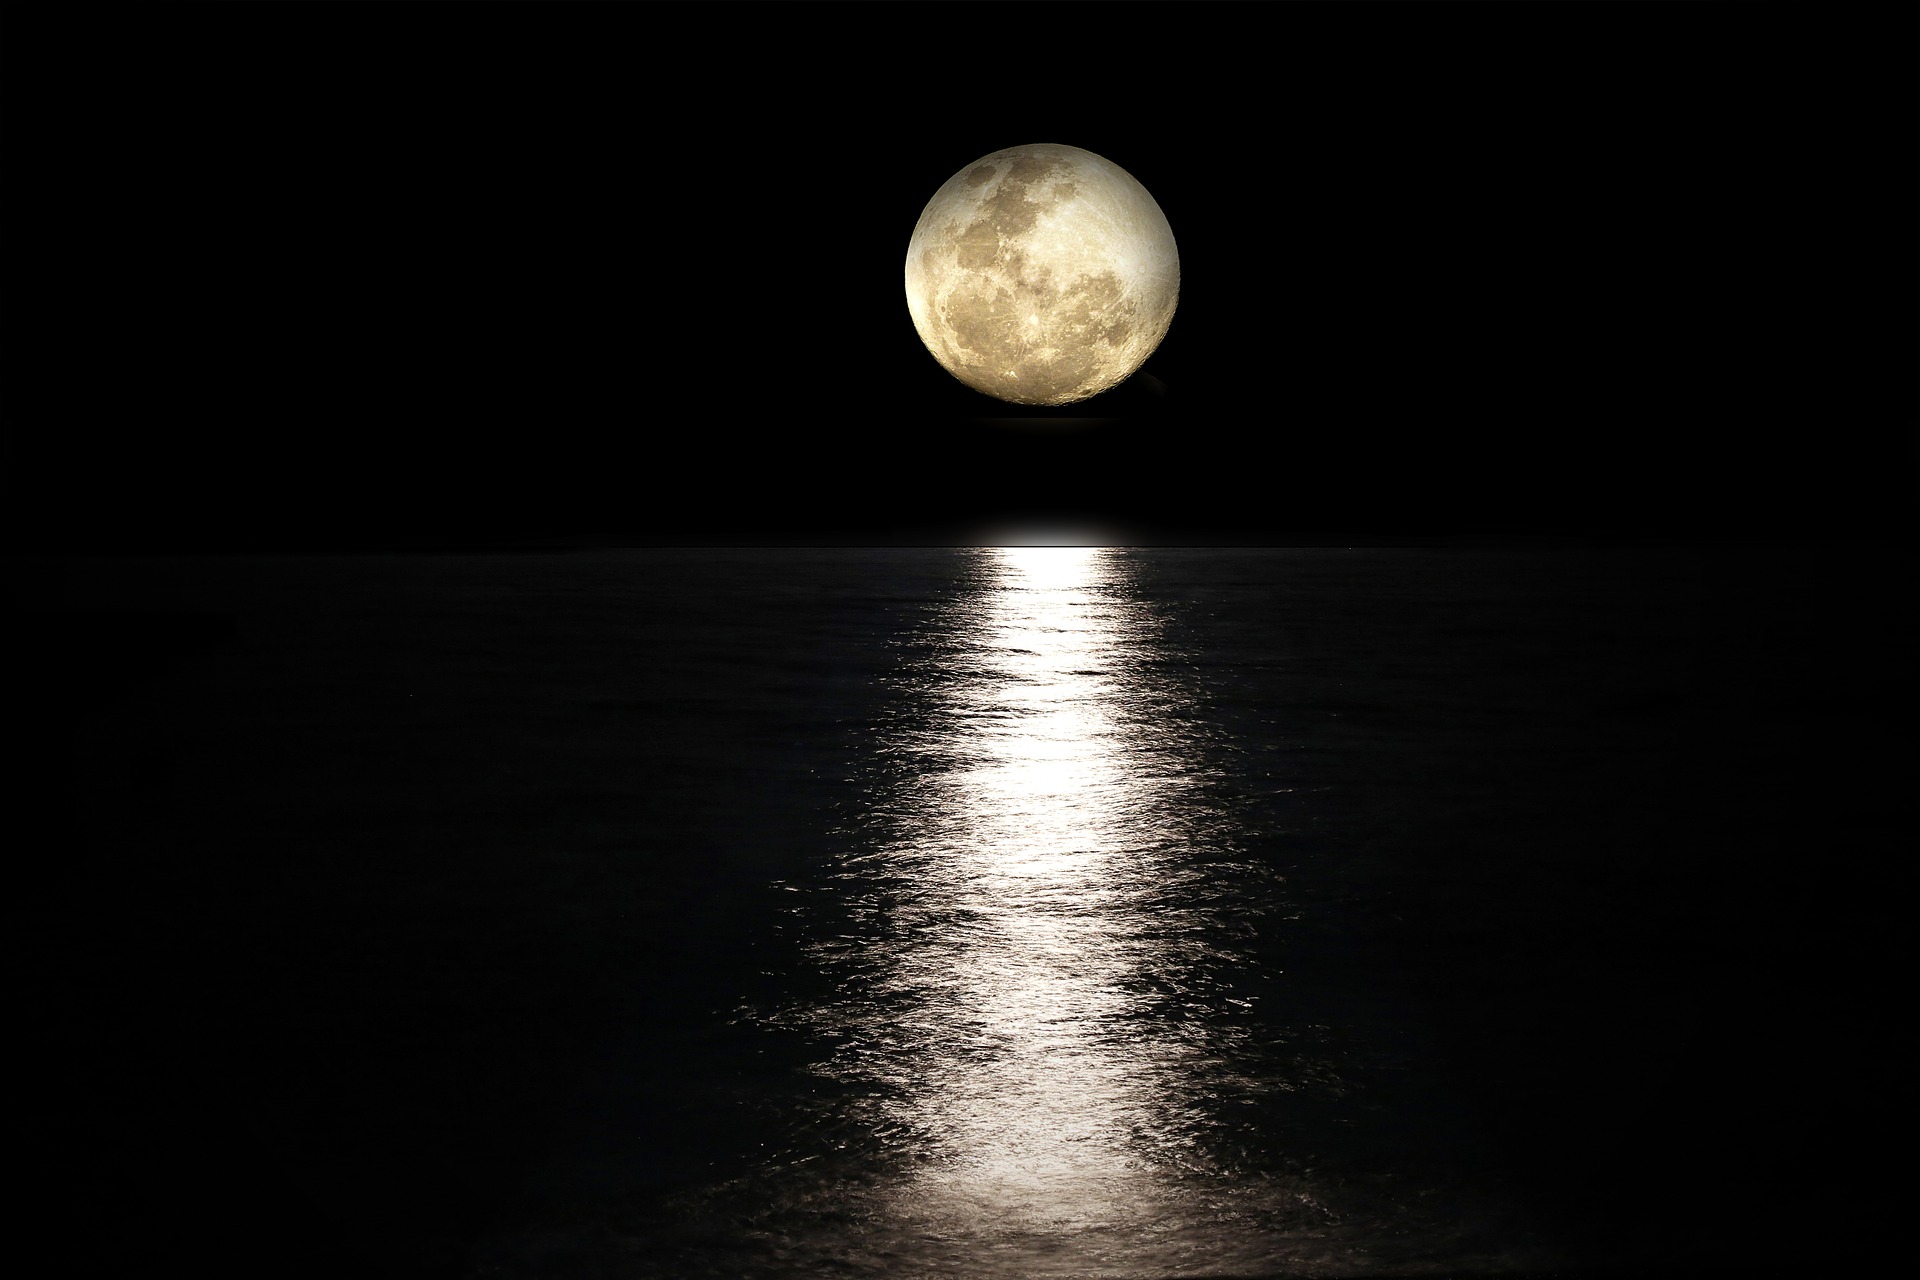 Moon-light reflected on sea